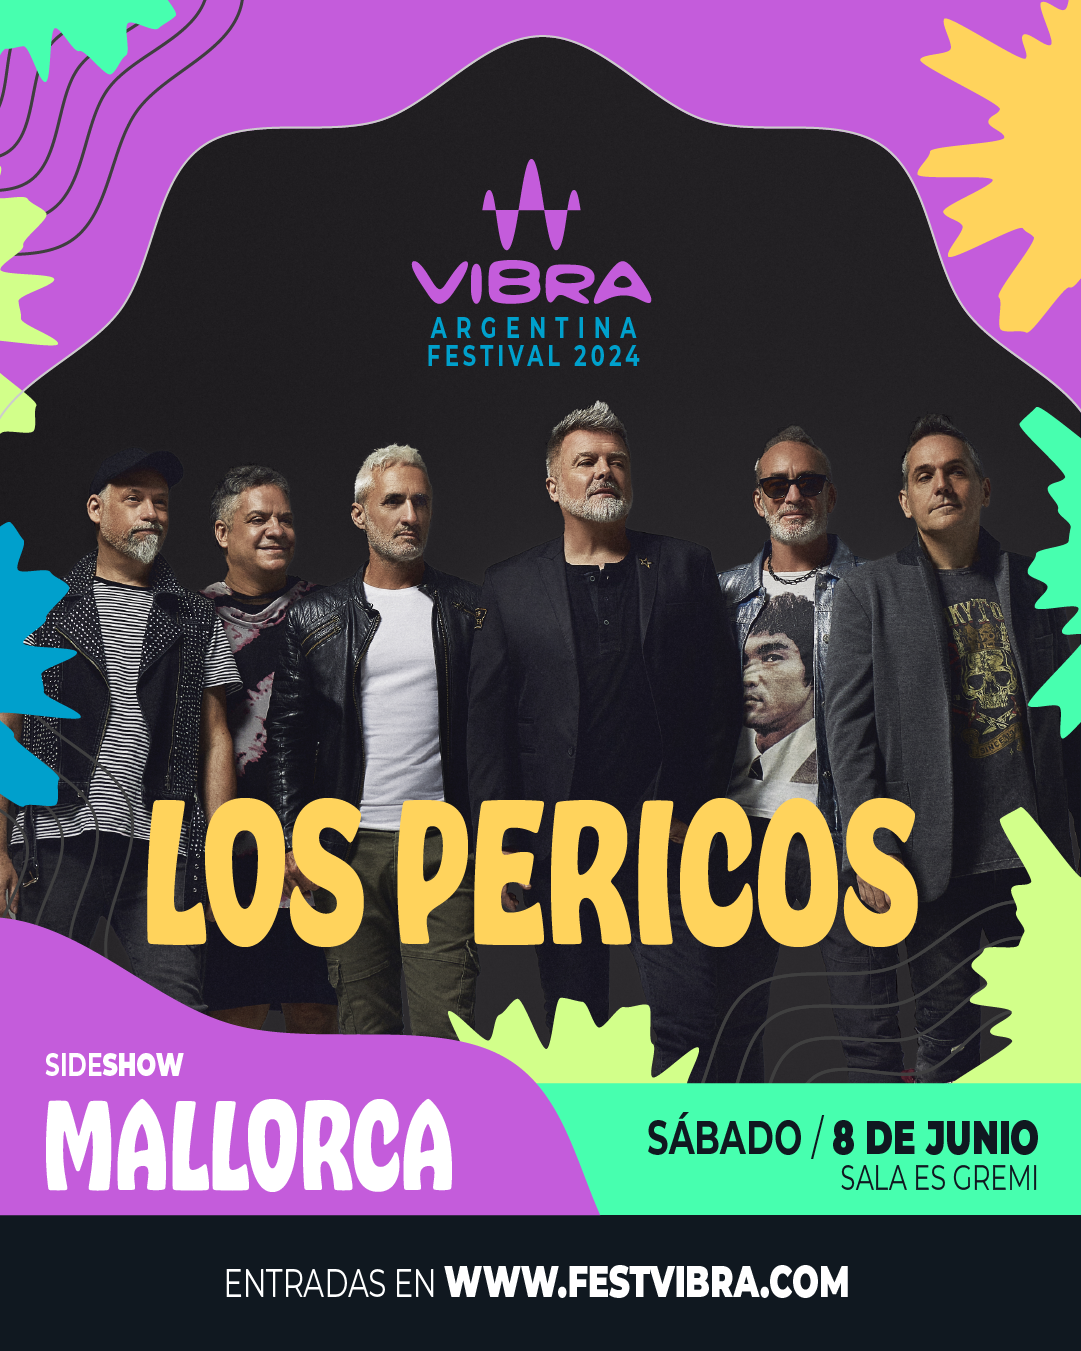 VIBRA ARGENTINA FESTIVAL 2024 en MALLORCA, sala es Gremi, Sabado 8 Junio, Los Perico. Entradas y Info: www.festvibra.com